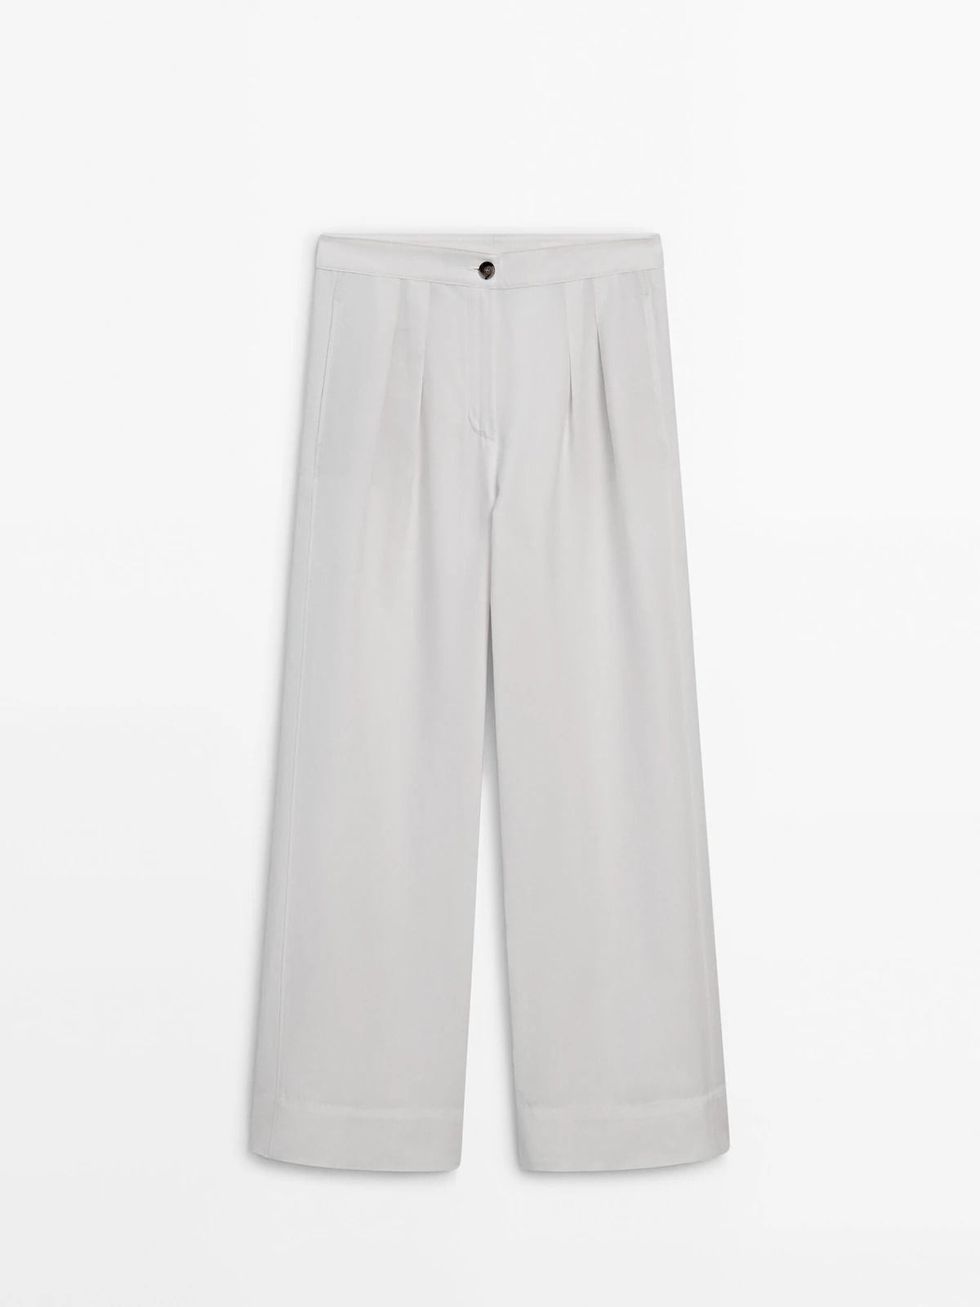 El pantalón ancho, fresco y elegante de Massimo Dutti que no